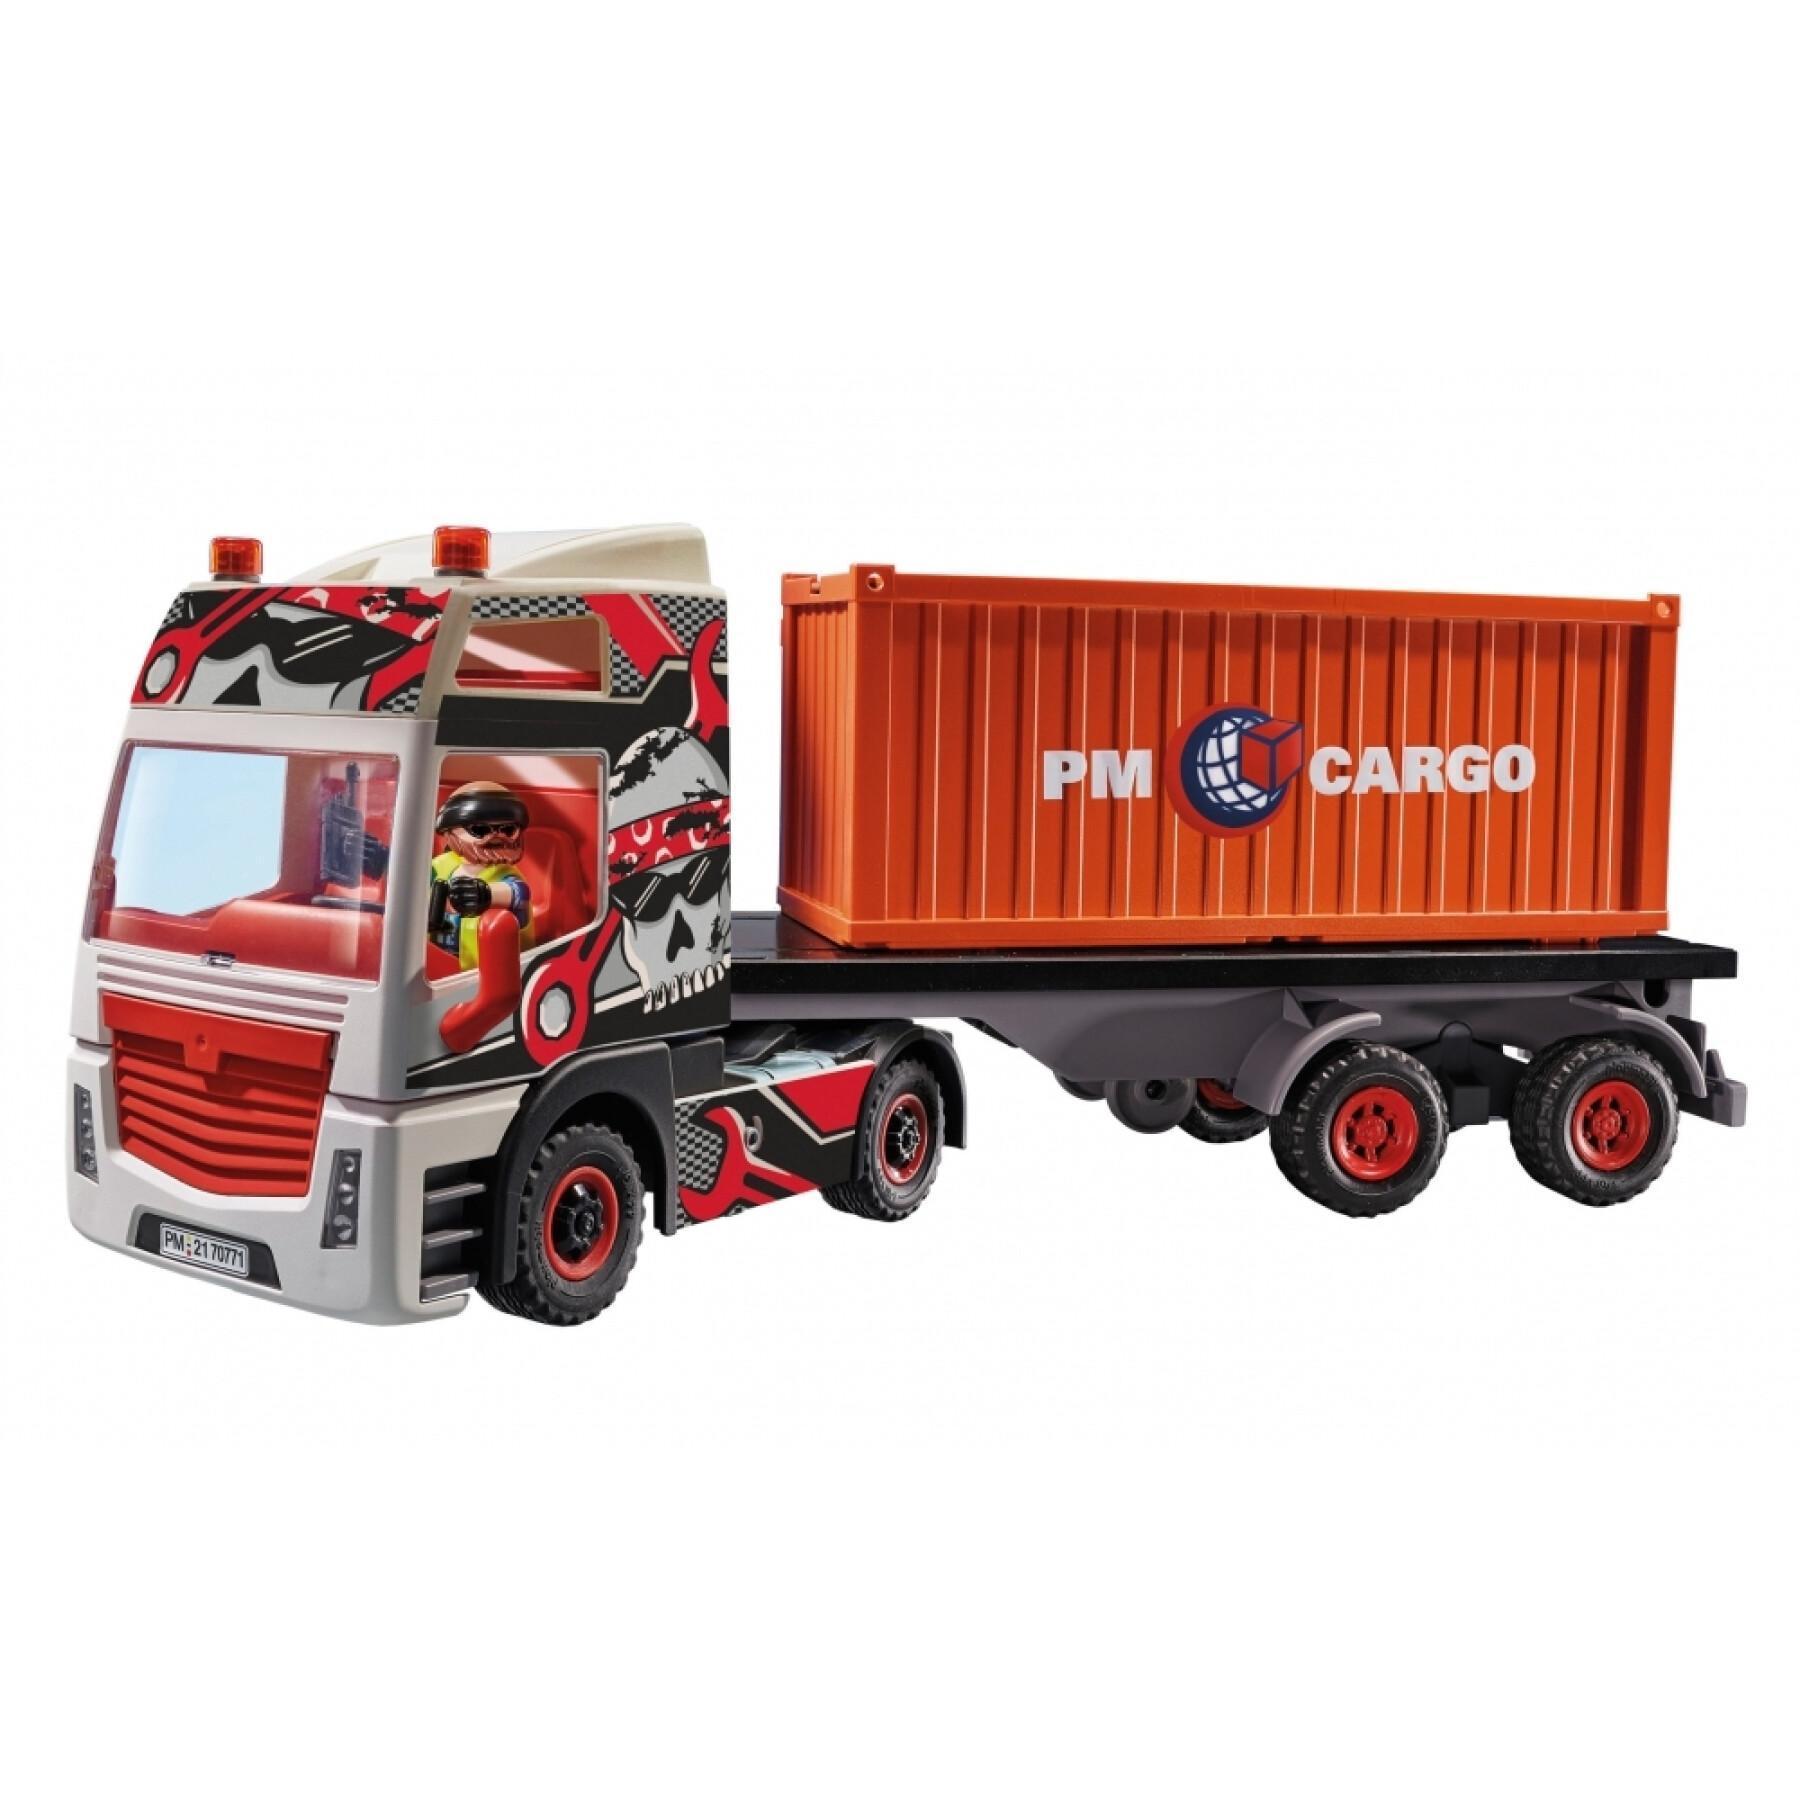 Lastwagen mit Stadtanhänger Playmobil